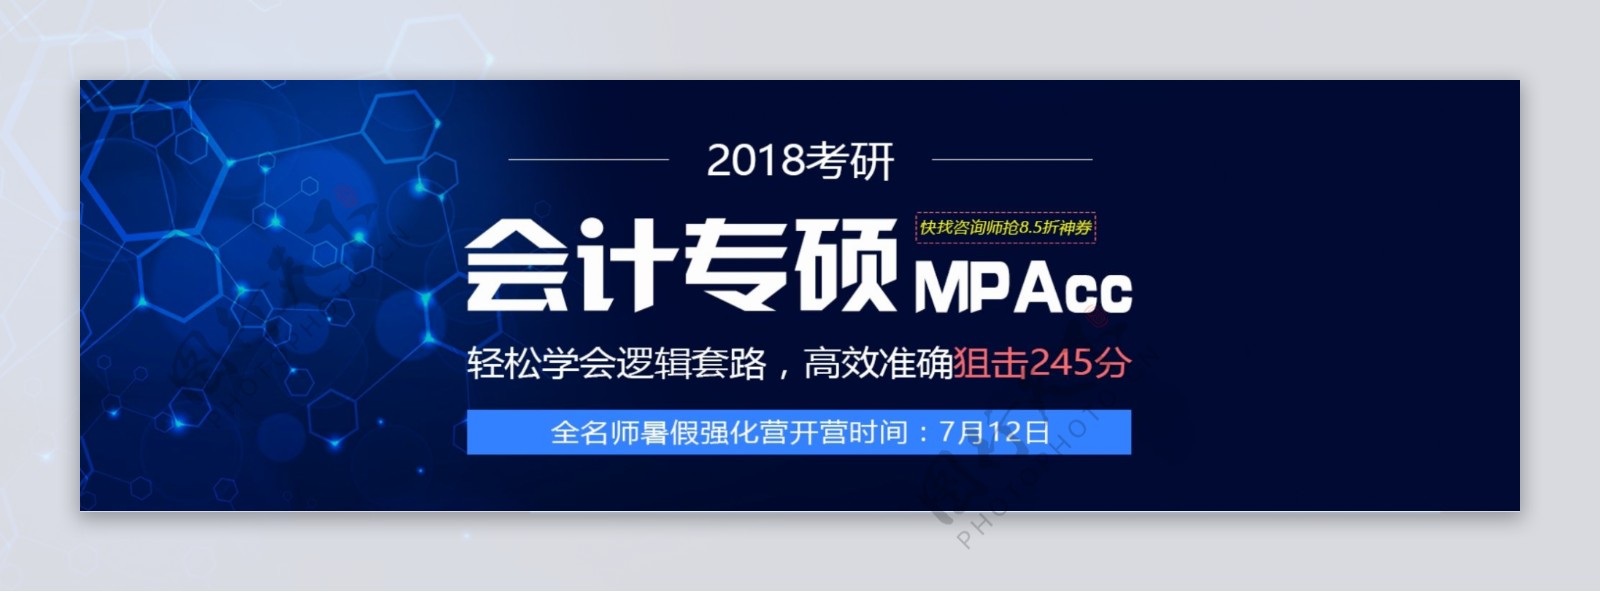 会计专硕MPAcc暑假强化营海报